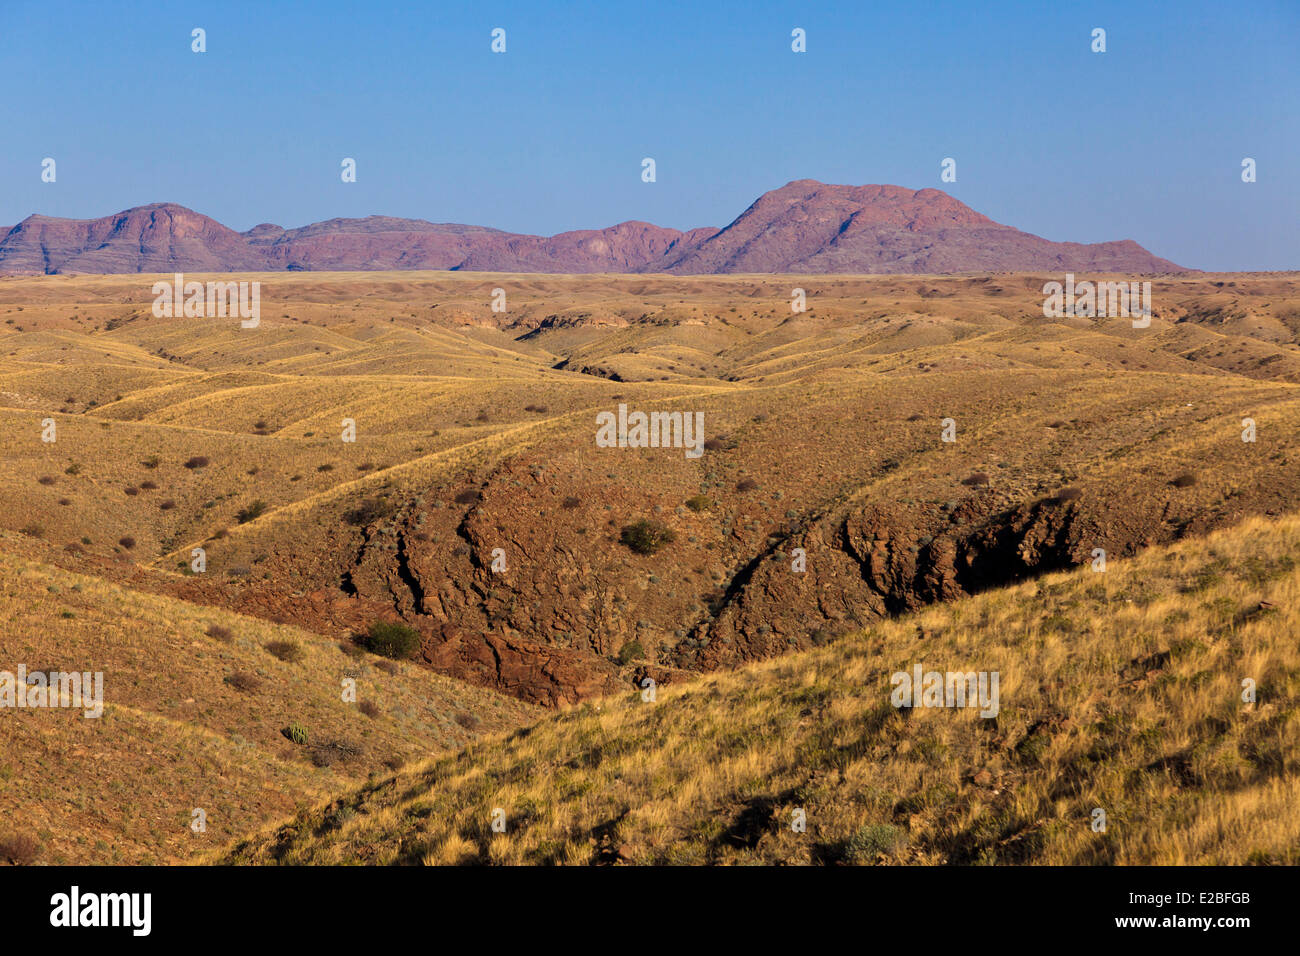 Namibia, Erongo Region, the Kuiseb Valley Stock Photo